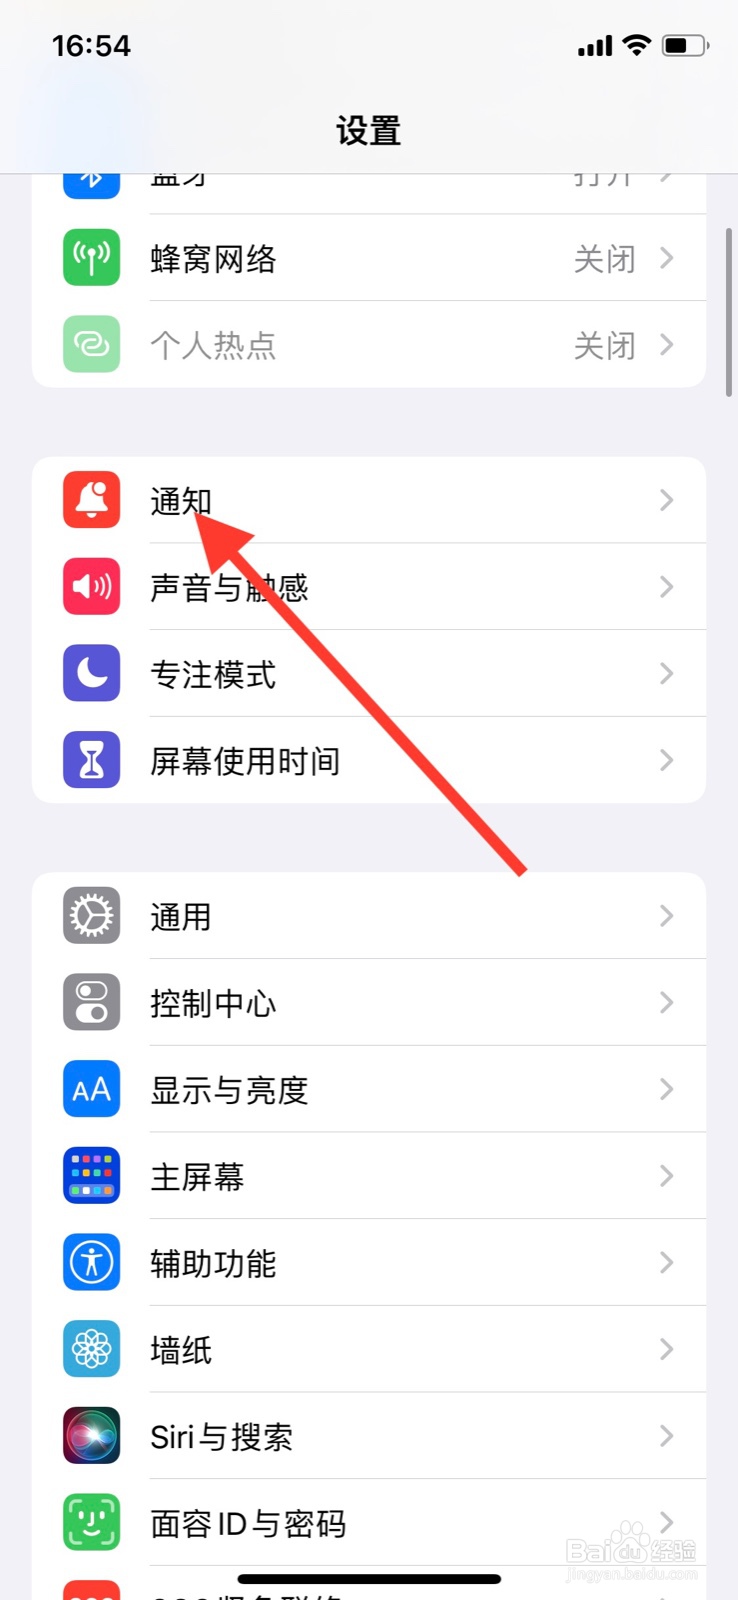 <b>iPhone通知中心允许“欢乐斗地主”app通知显示</b>